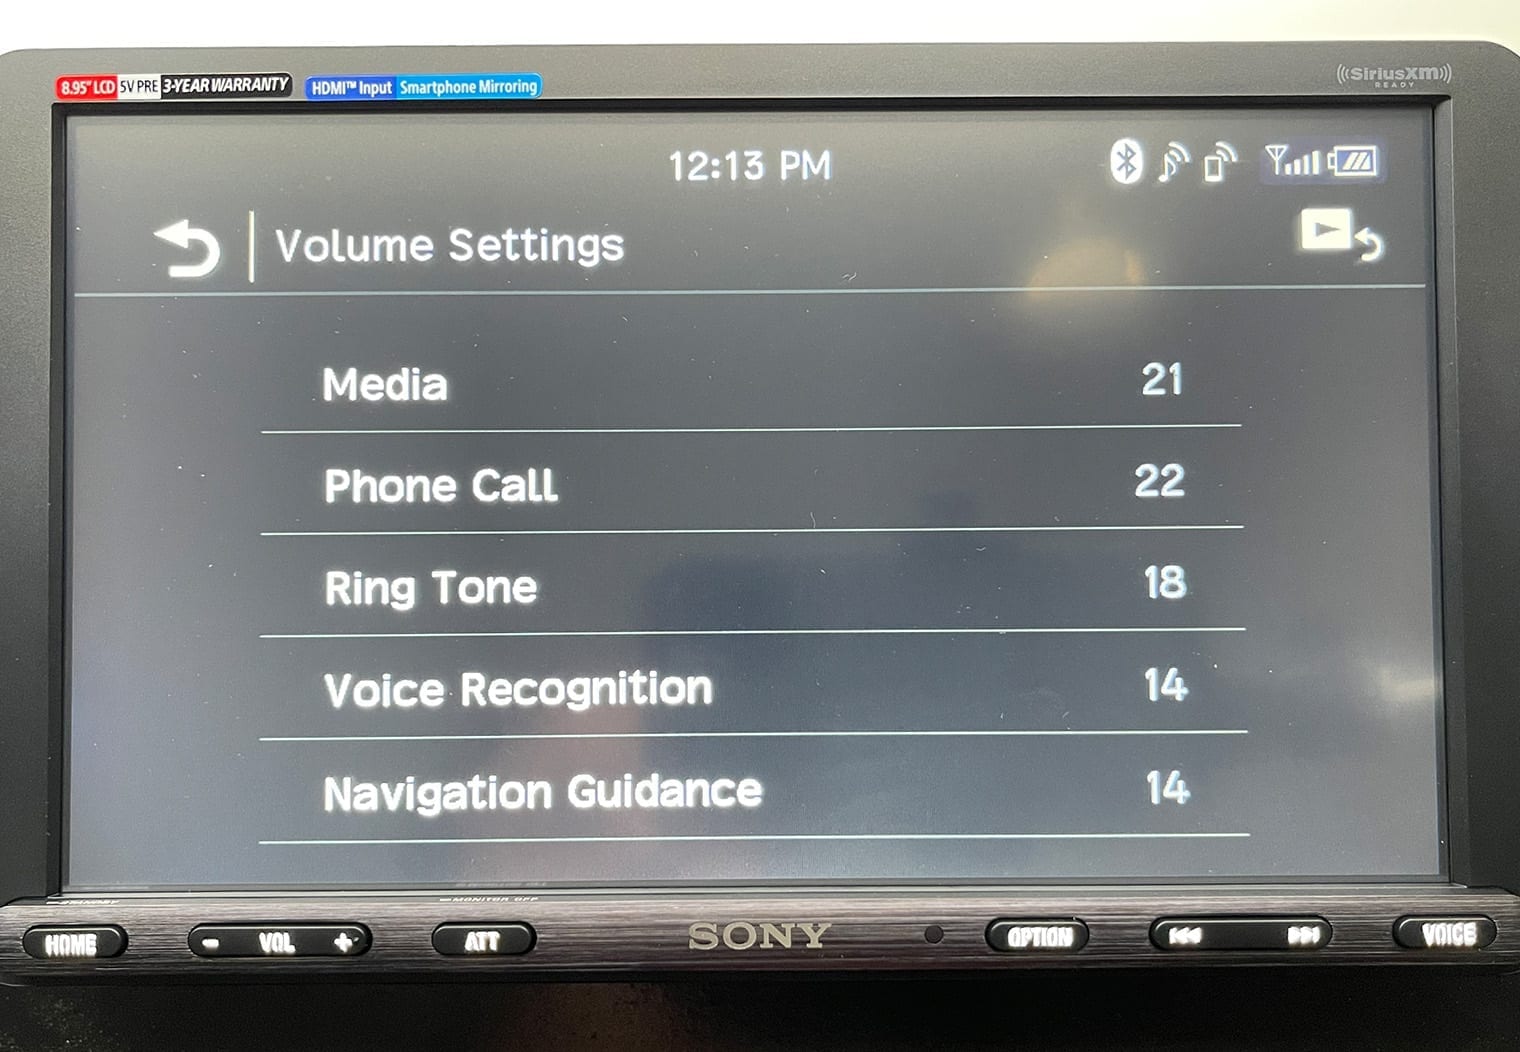 Sony XAV-AX8100 volume settings